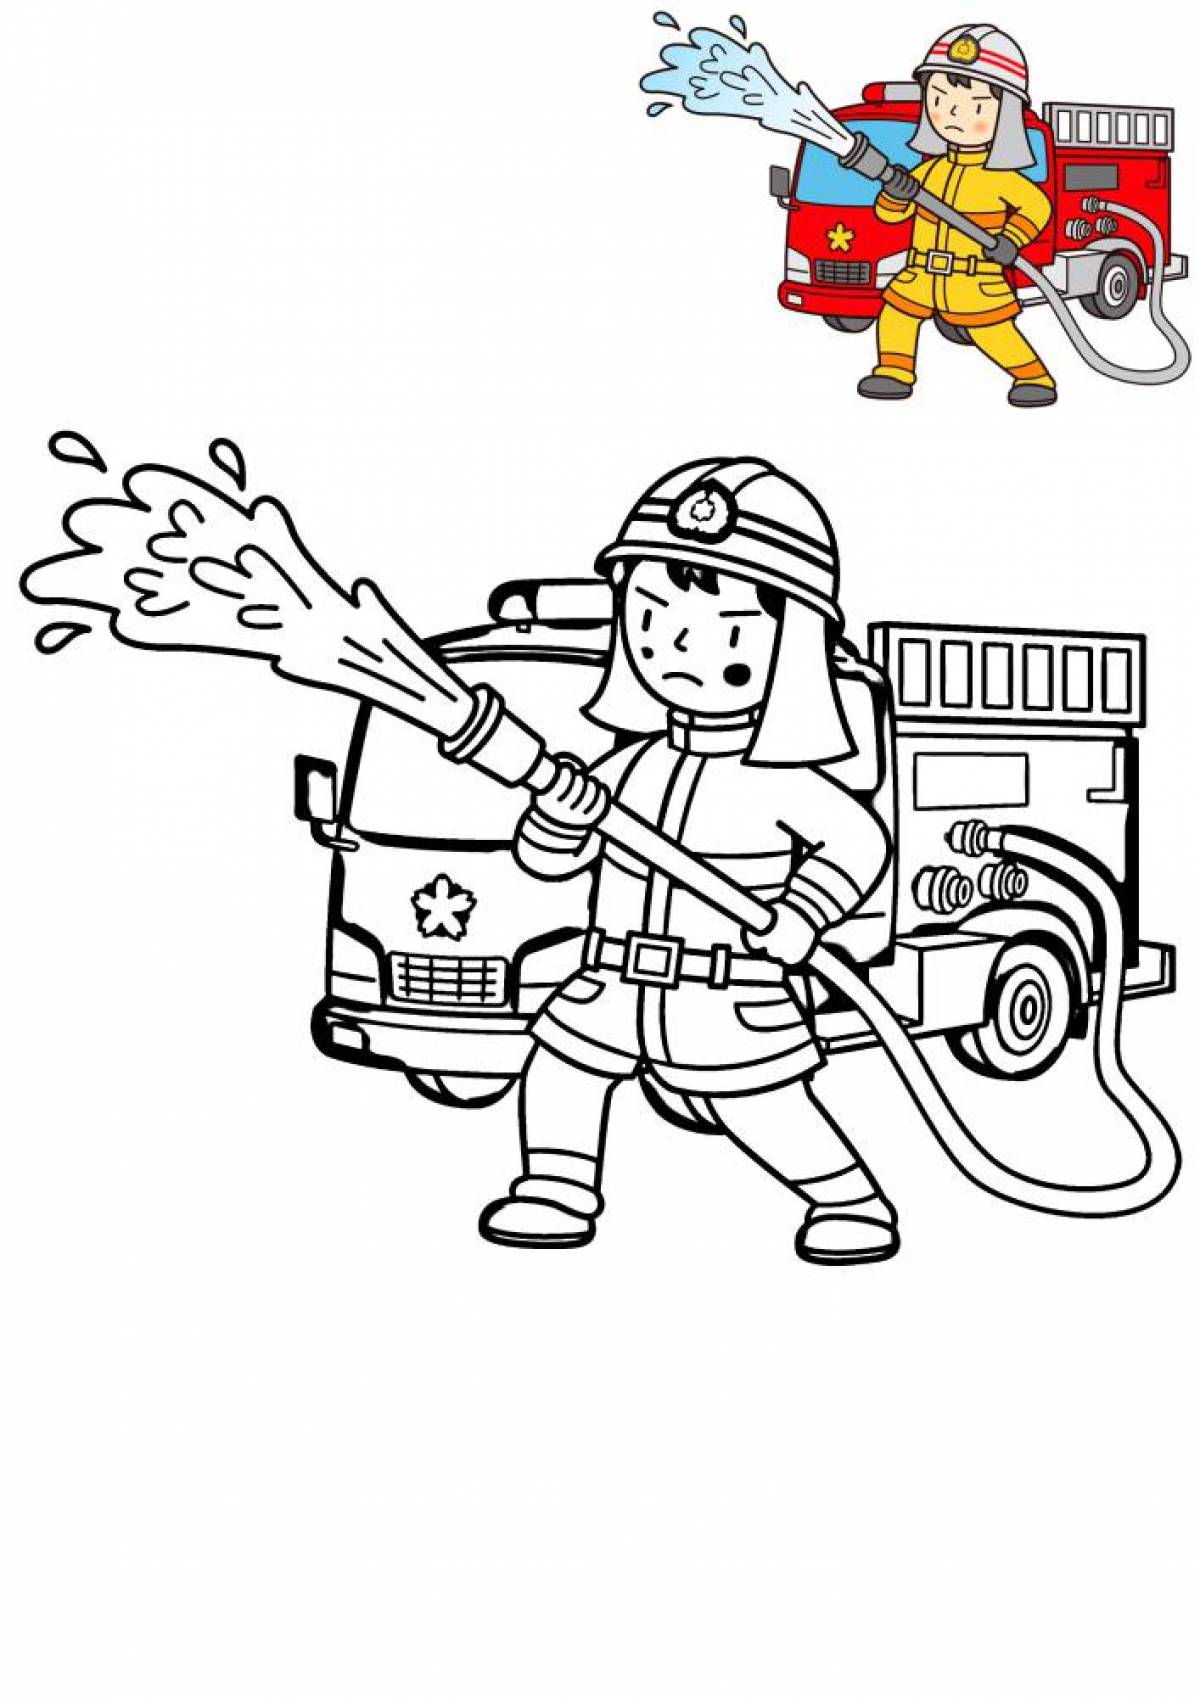 Firefighter for children #1